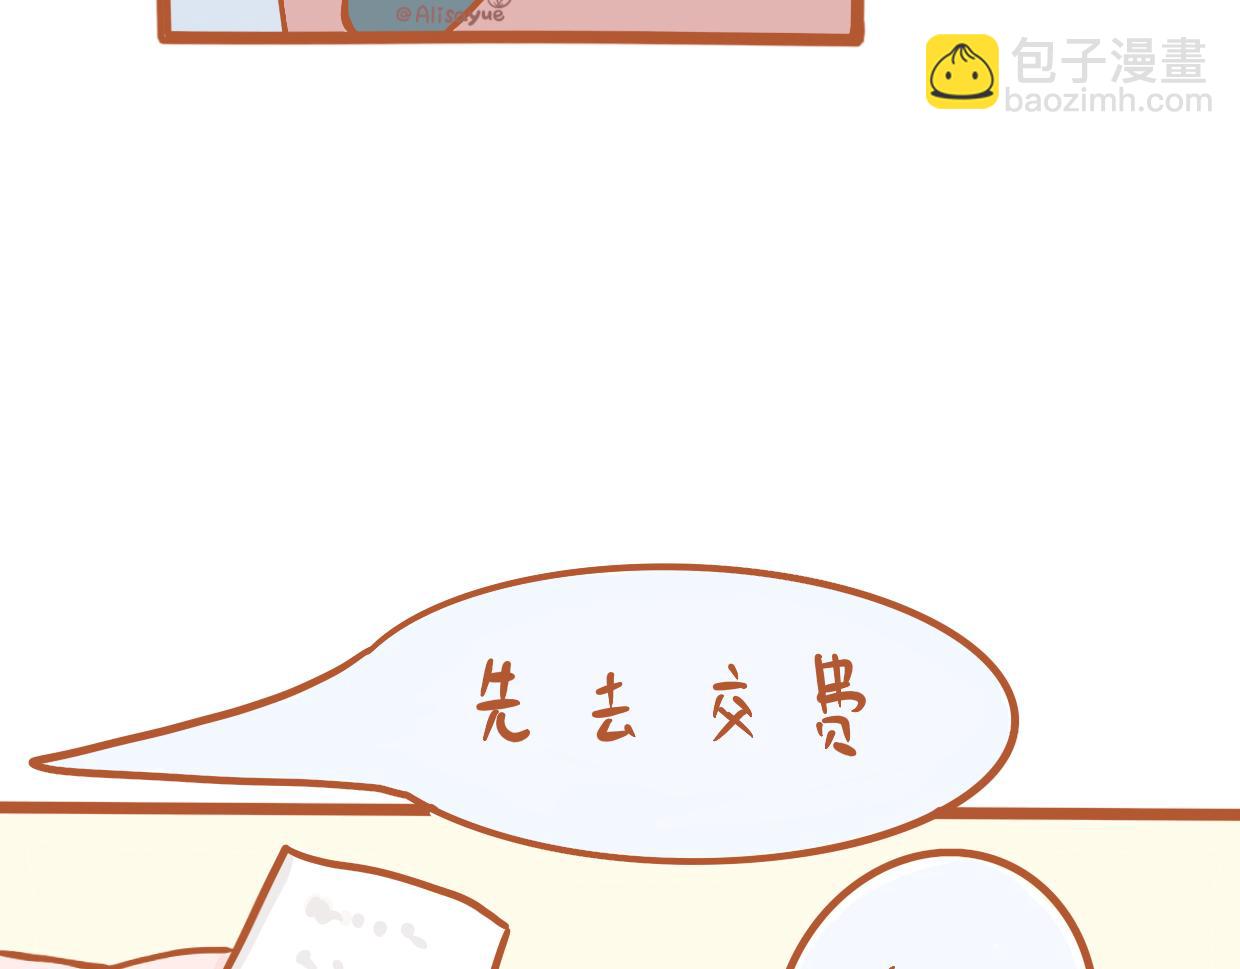 悅悅醬の漫畫日記 - 上醫院 - 2